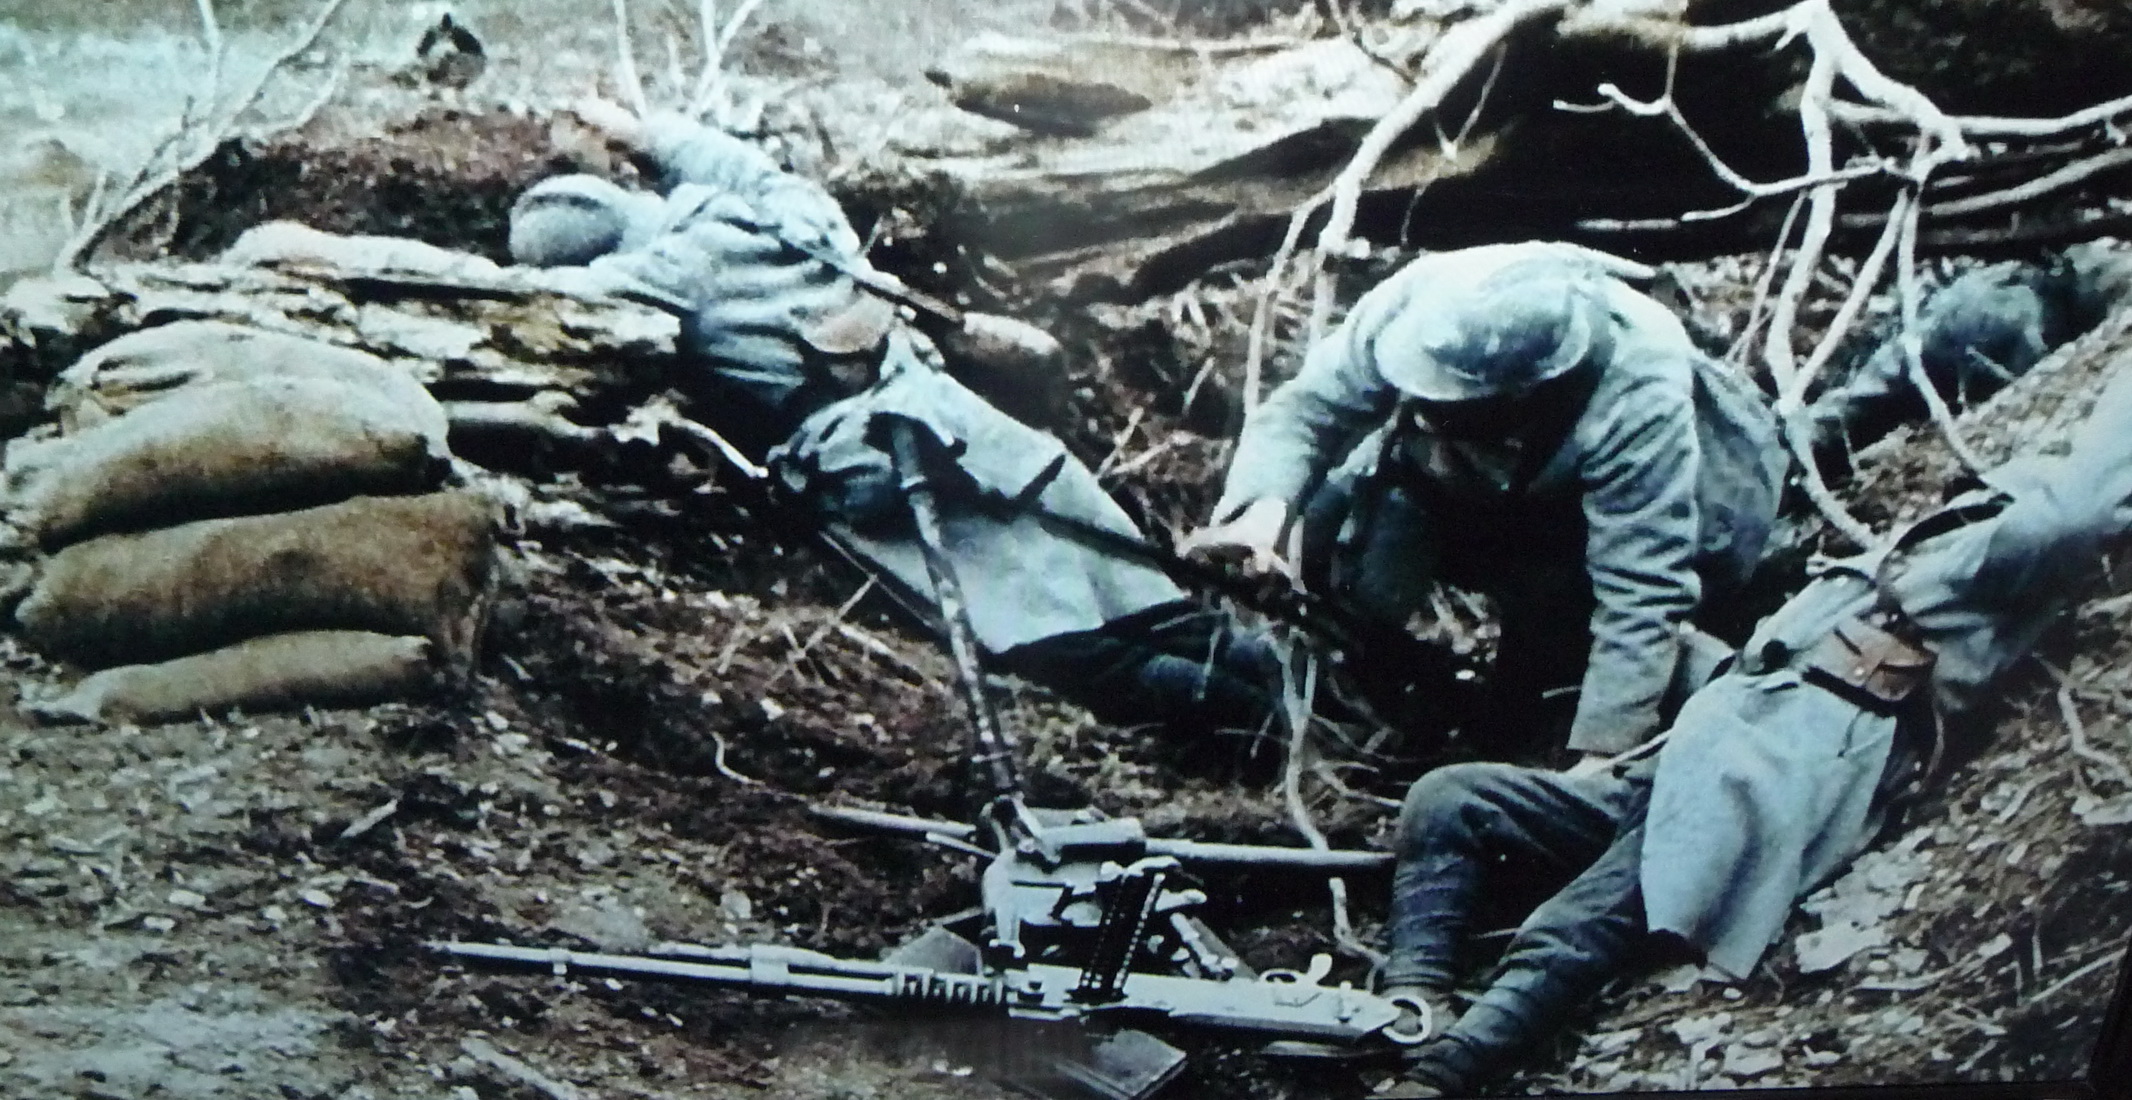 Bataille de Verdun - 21 Février 1916 (Il y a 100 ans).